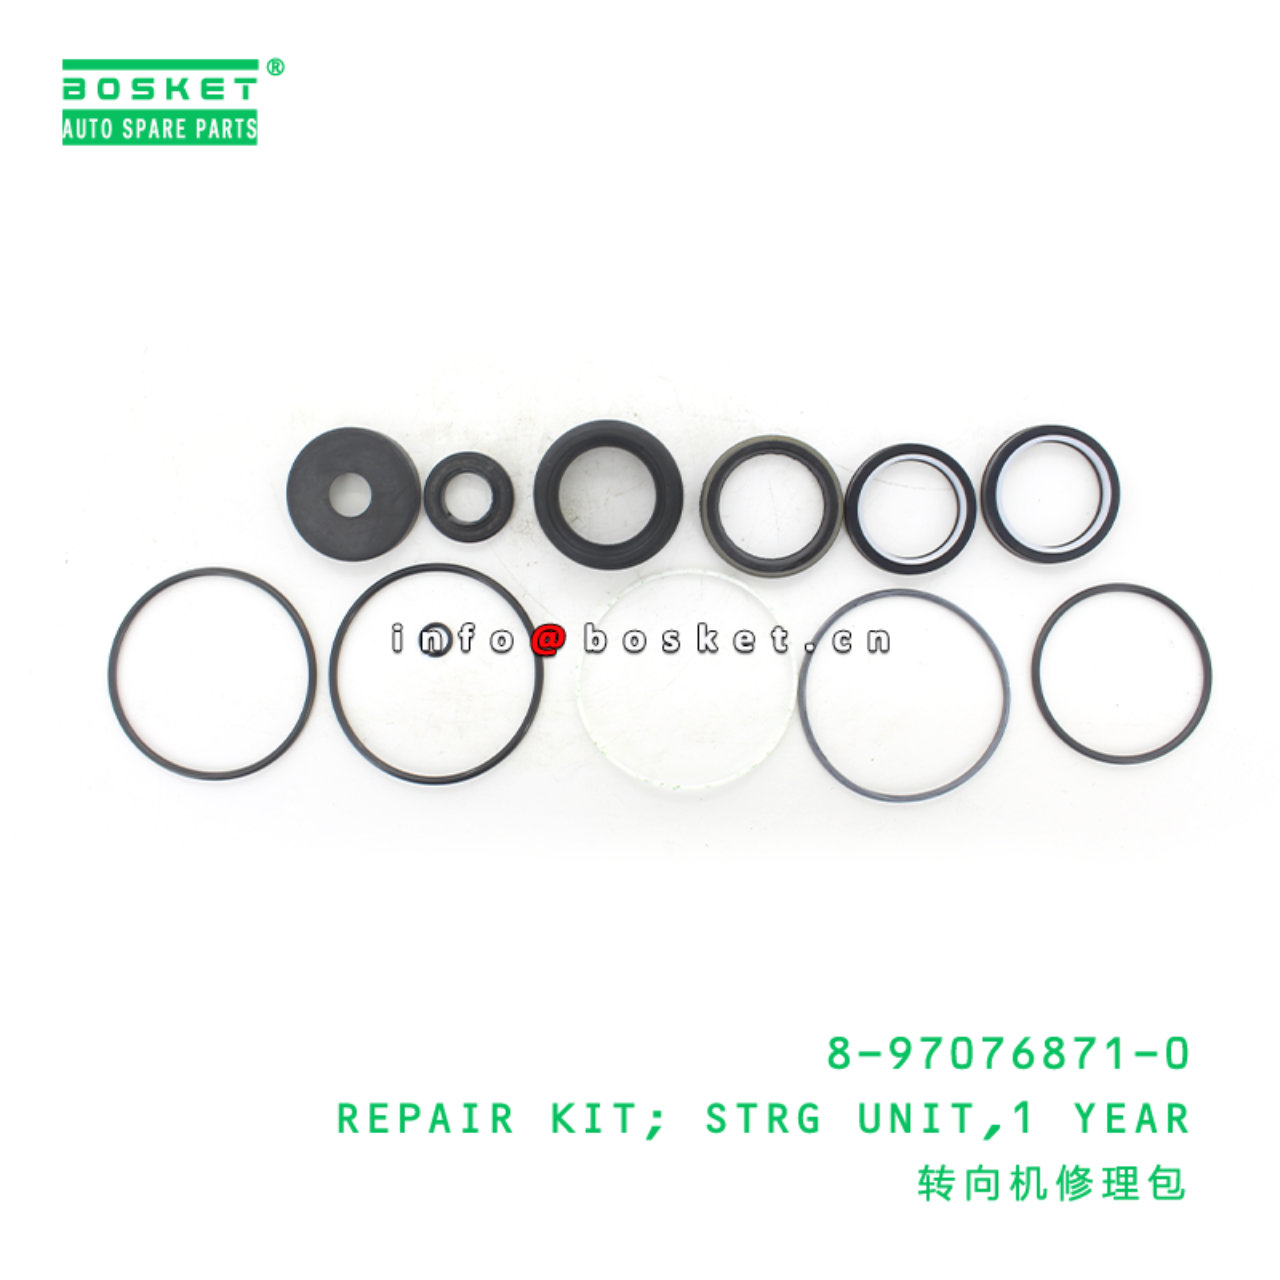 8-97076871-0 1 Year Steering Unit Repair Kit Suitable for ISUZU NKR 8970768710